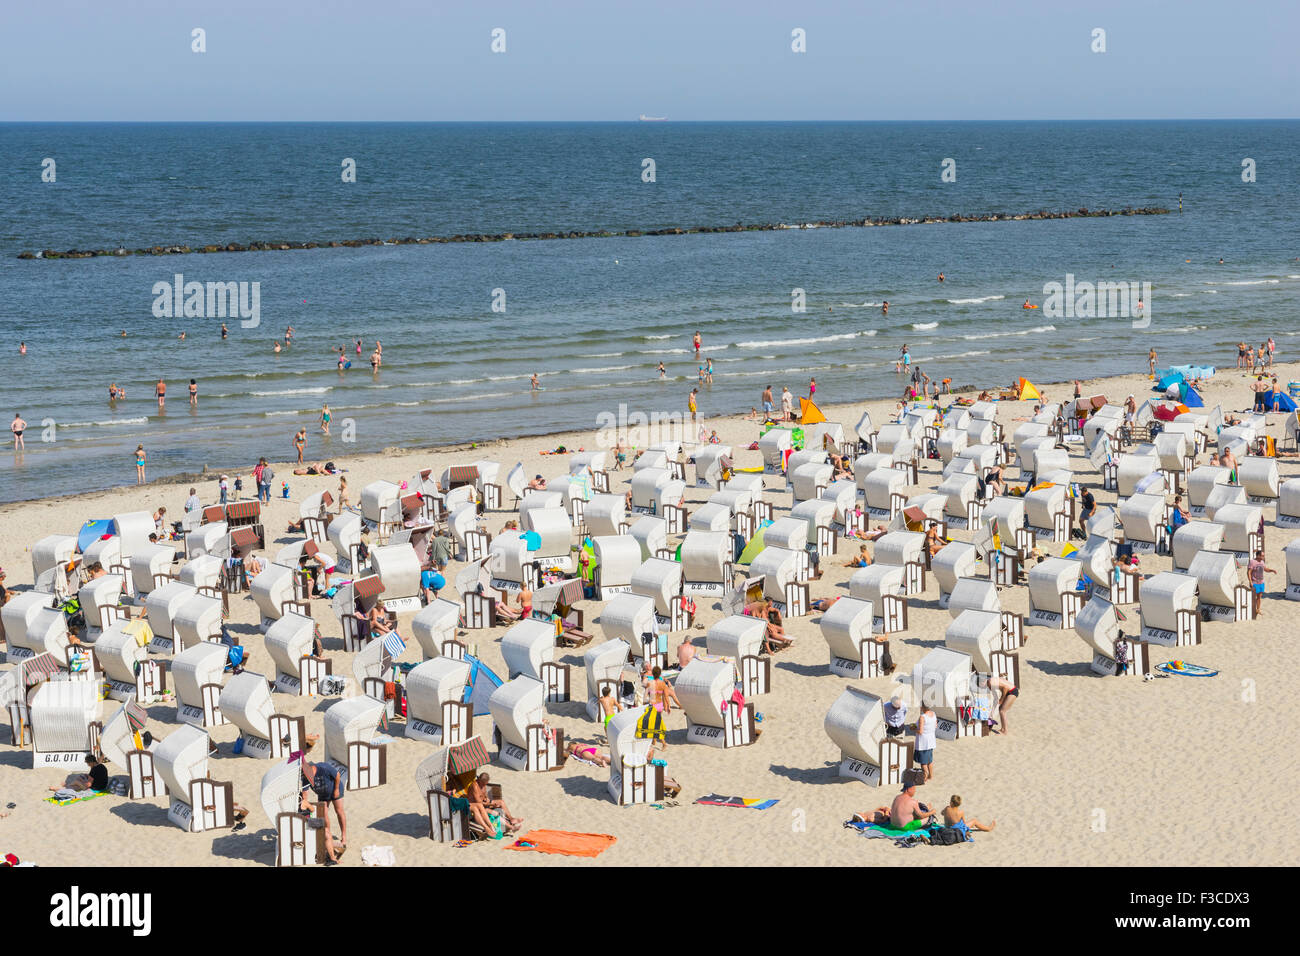 Molti Strandkorb tradizionali sedie a sdraio sulla spiaggia a Sellin resort sull isola di Rügen, Meclenburgo-Pomerania Germania Foto Stock